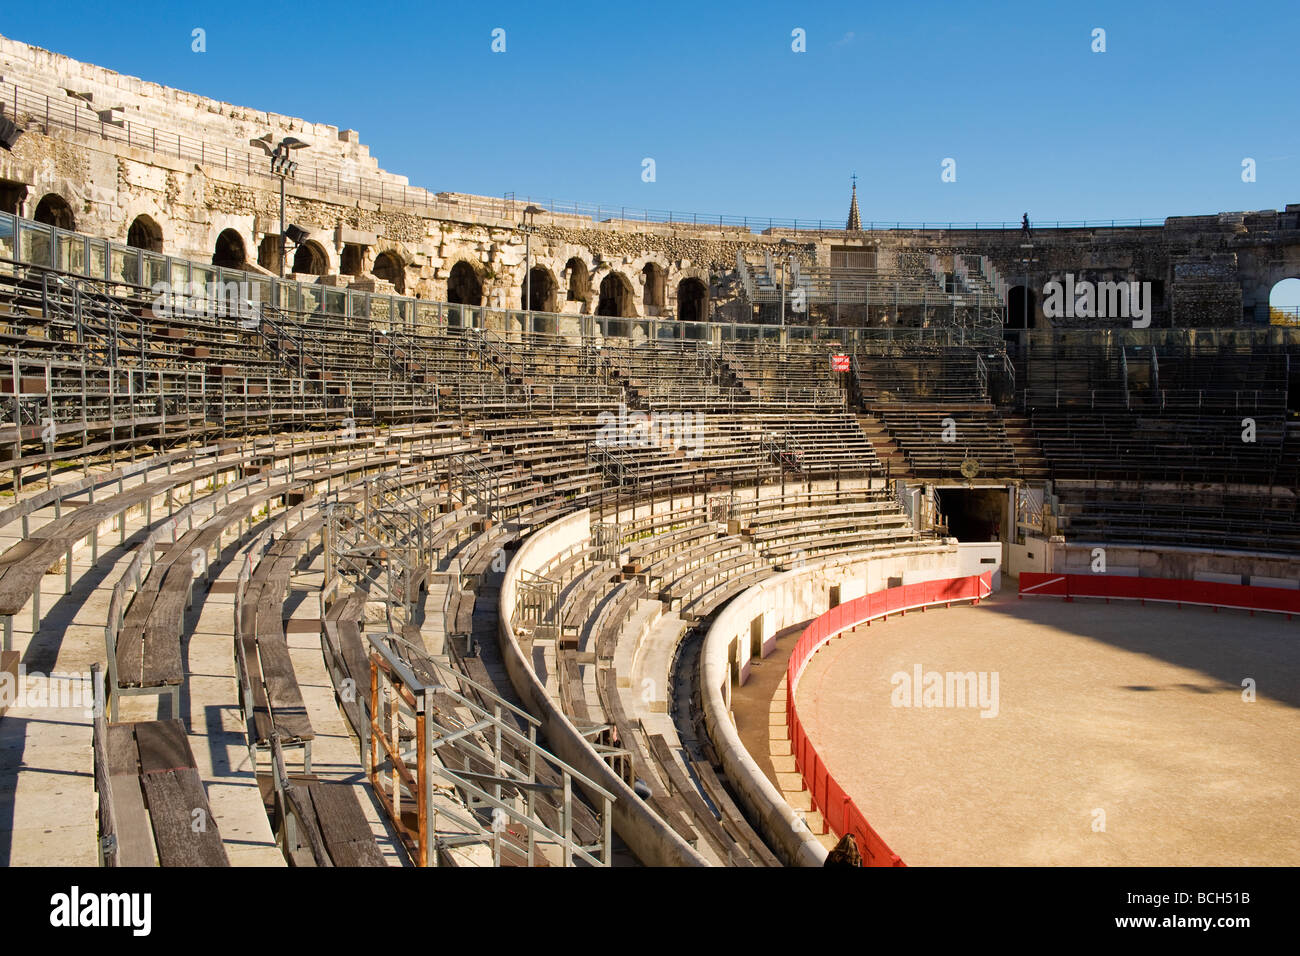 Innere des Les Arènes de Nîmes, ein römisches Amphitheater in der Stadt Nimes in Südfrankreich.  Jetzt für Stierkämpfe genutzt. Stockfoto